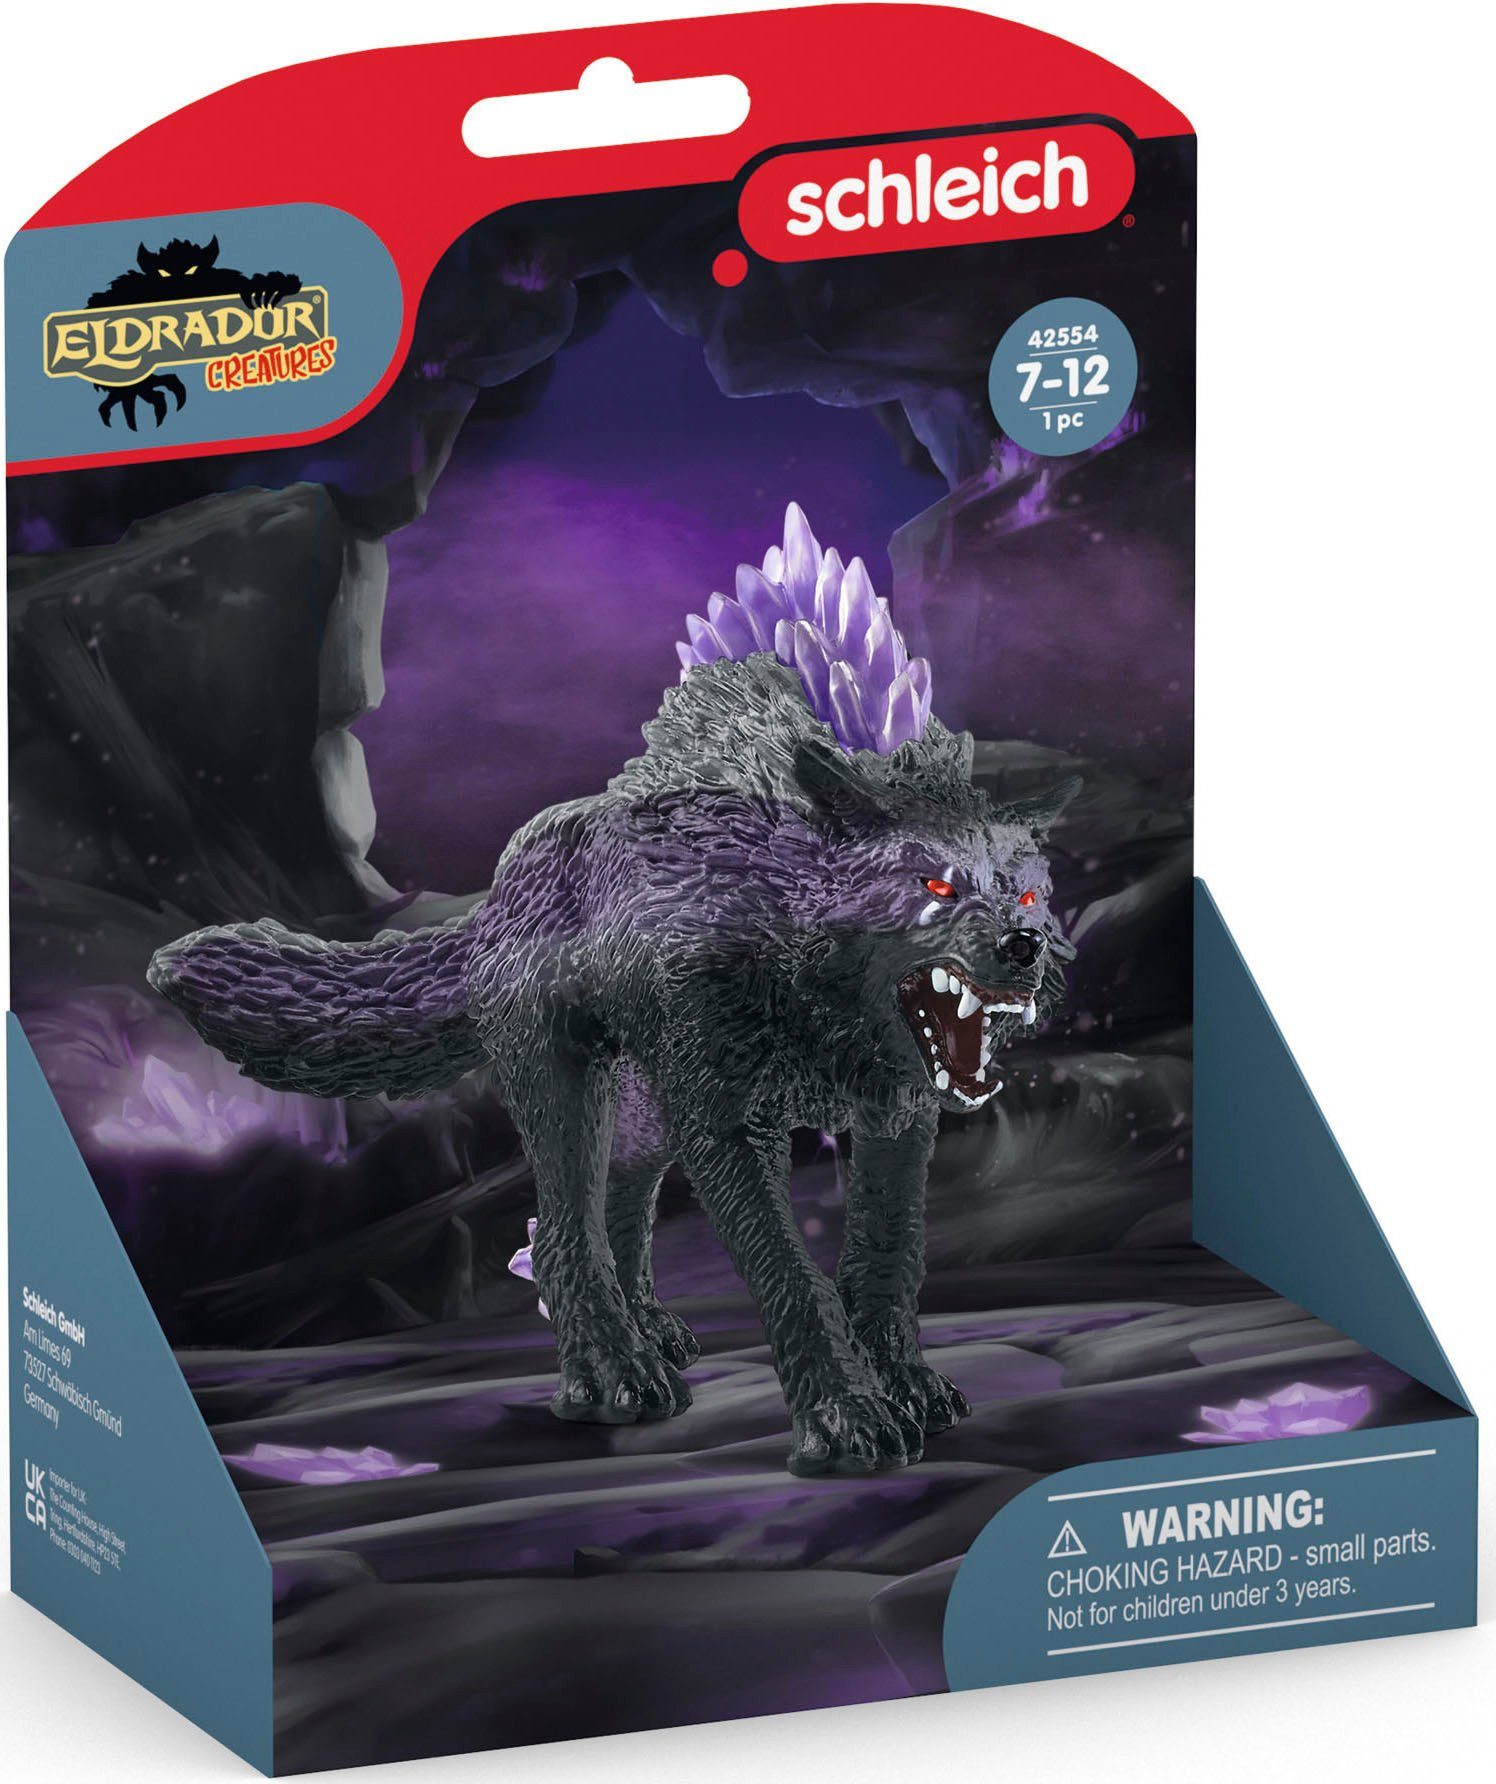 Schleich® Spielfigur Schattenwolf ELDRADOR®, (42554)